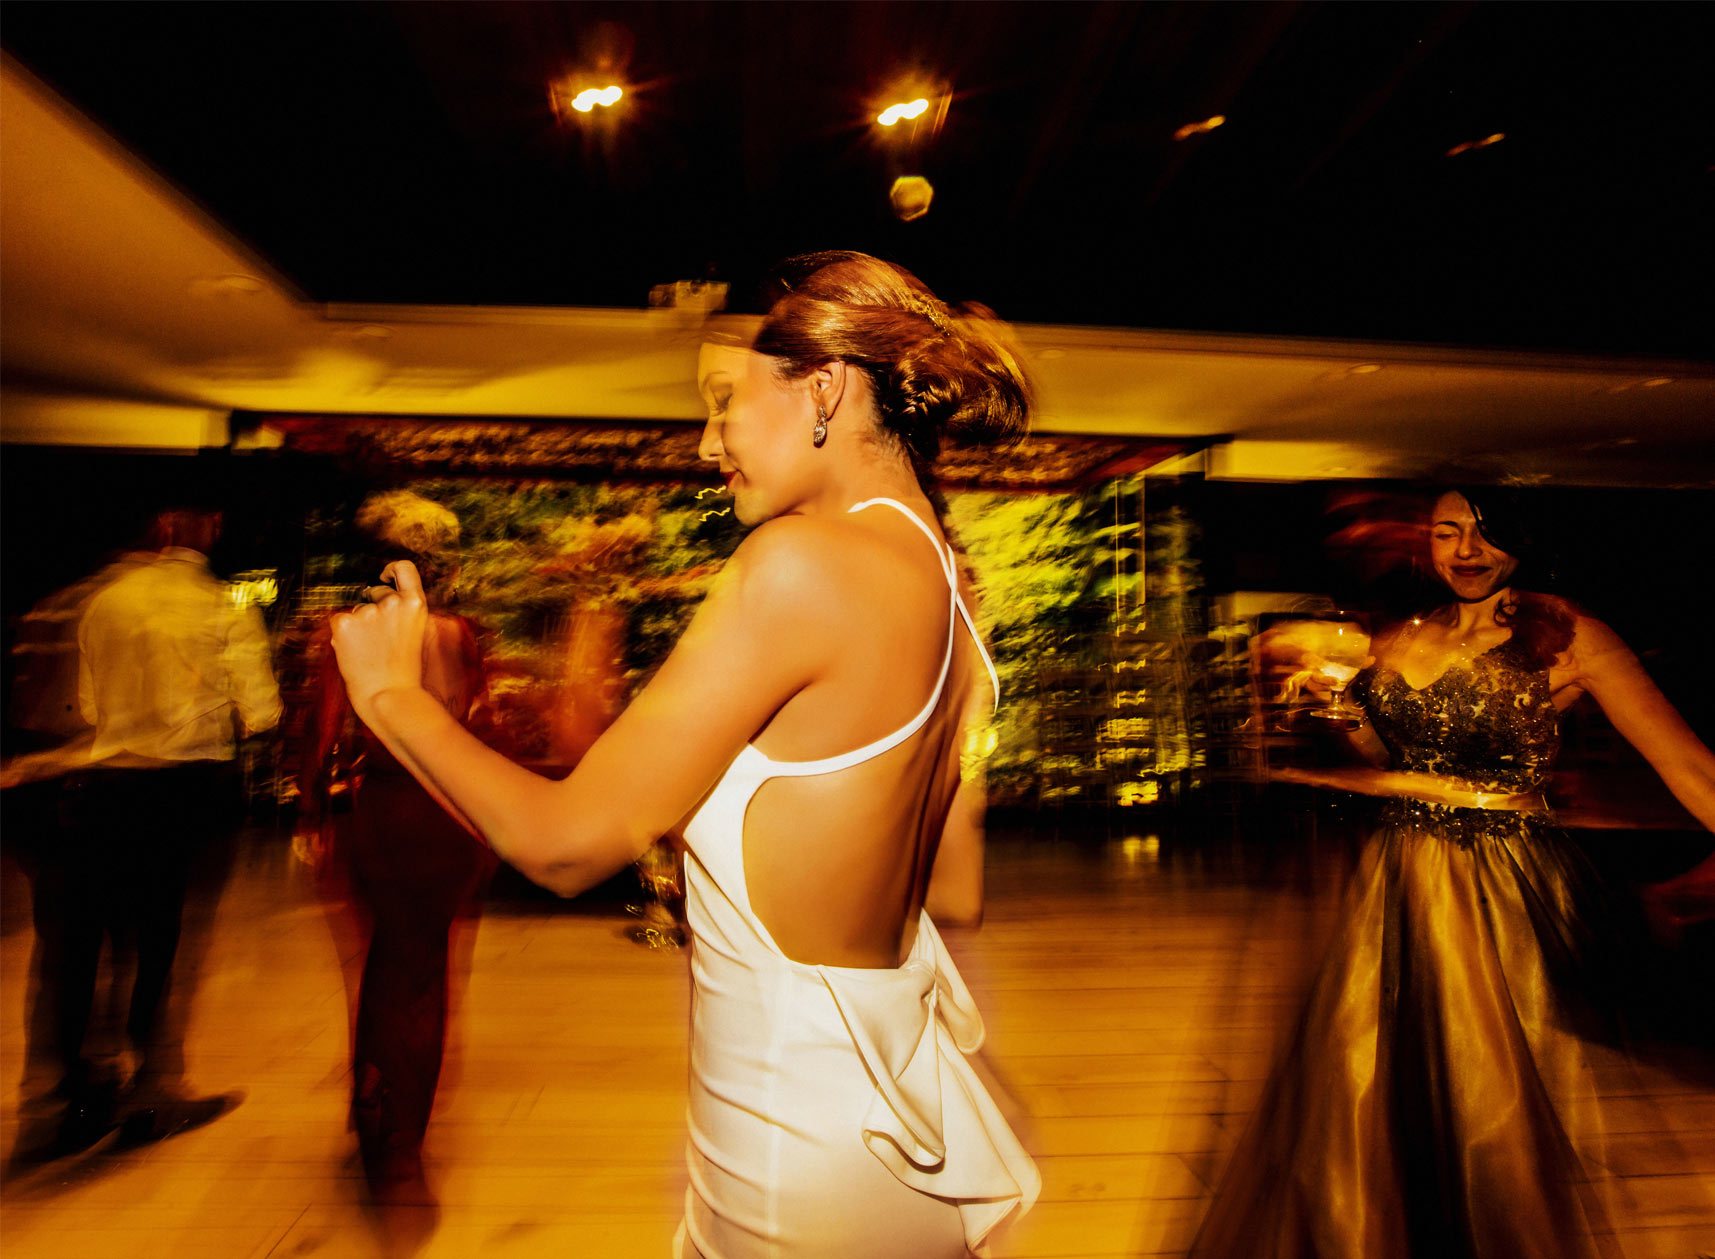 La novia bailando en la barra libre.